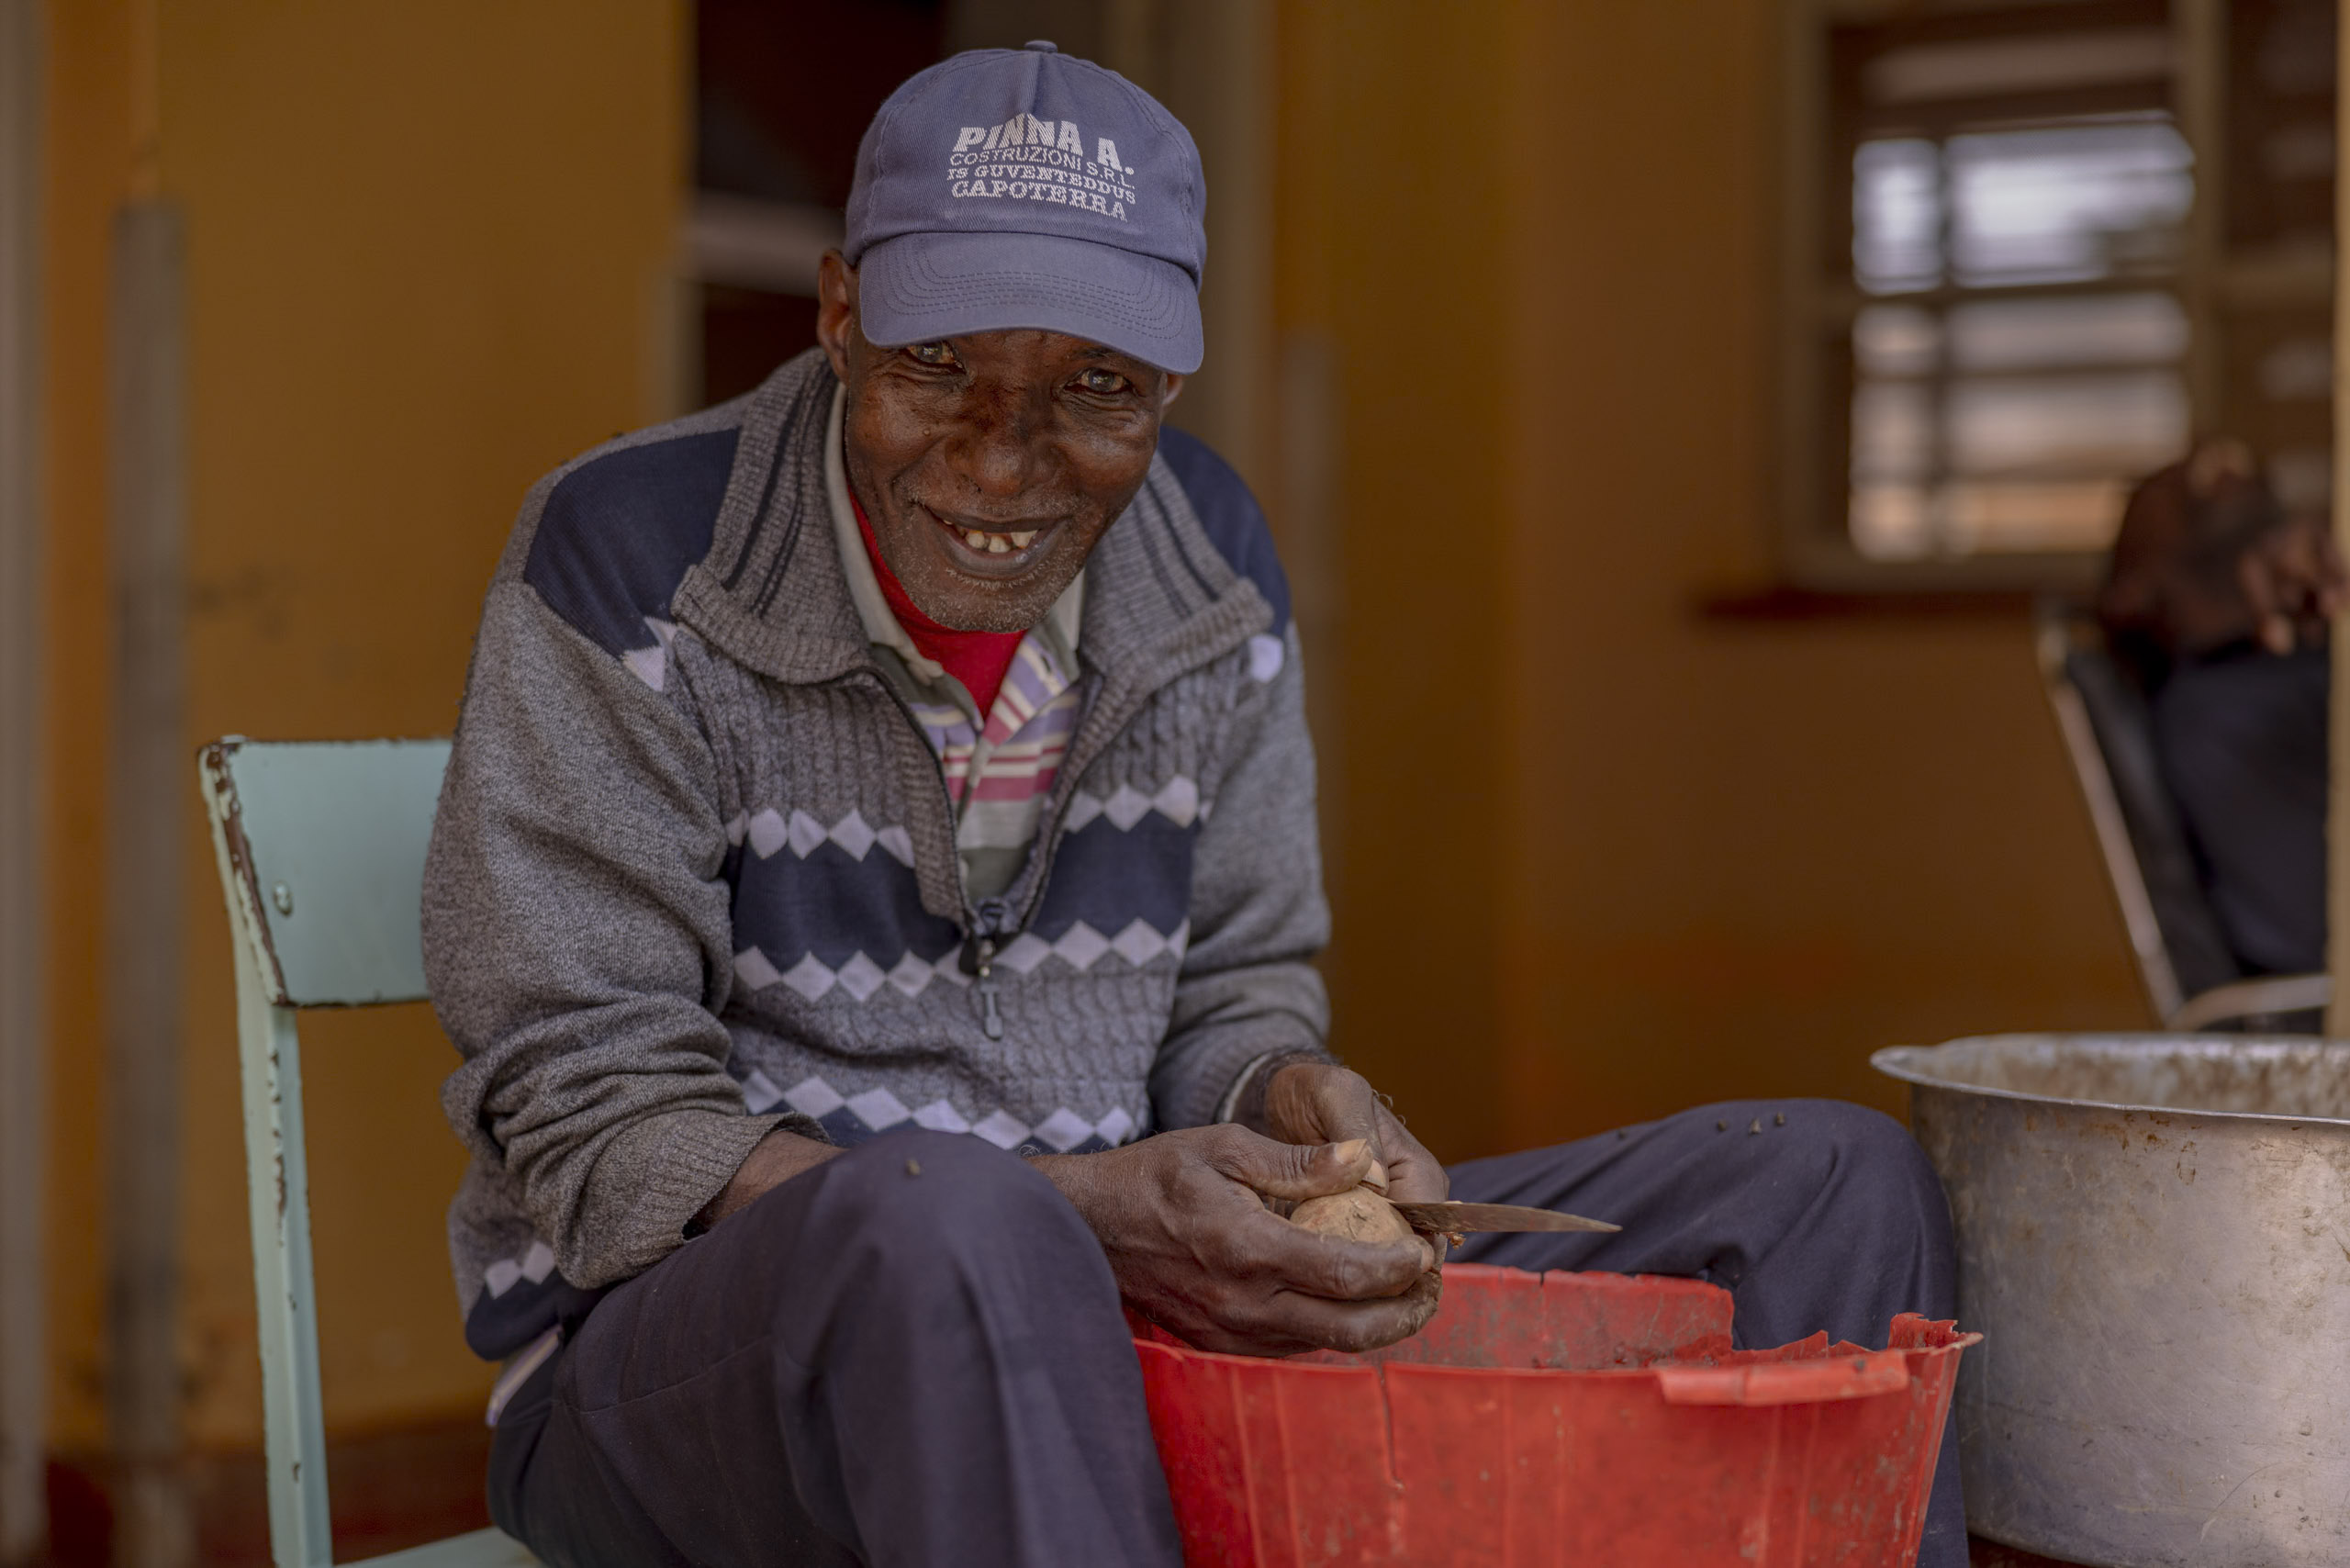 Ein älterer Mann in Pullover und Mütze sitzt auf einem Stuhl und schält Kartoffeln in einen roten Eimer, während er in einer rustikalen Umgebung herzlich in die Kamera lächelt. © Fotografie Tomas Rodriguez